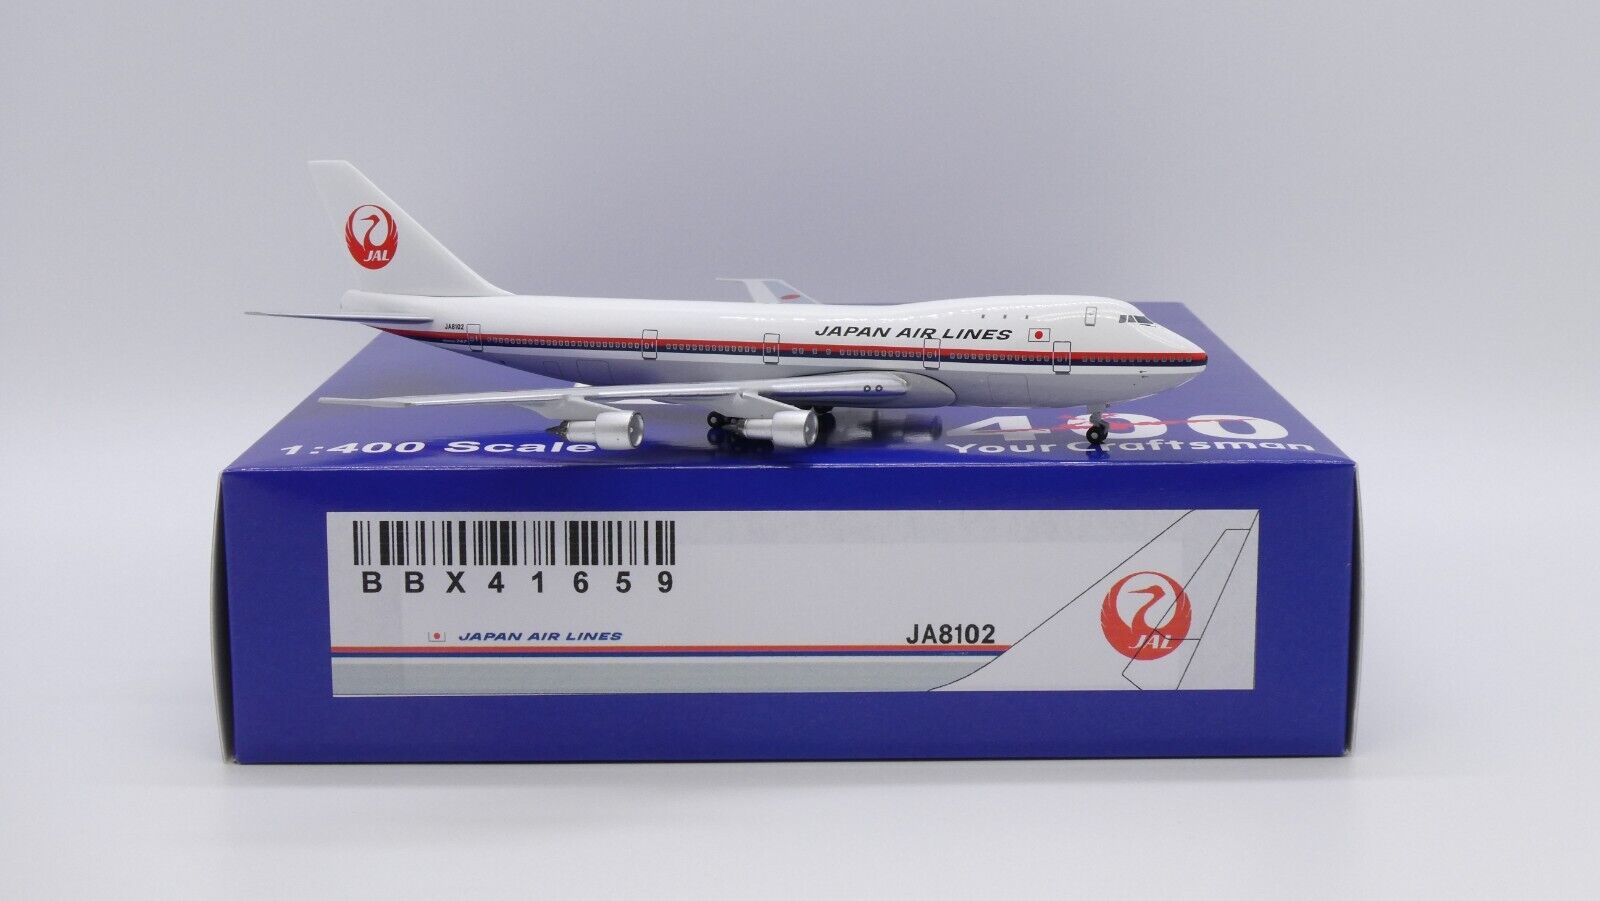 Japan Airlines B747-100 Reg: JA8102 1:400 Aeroclassics Diecast BBX41659 (E)